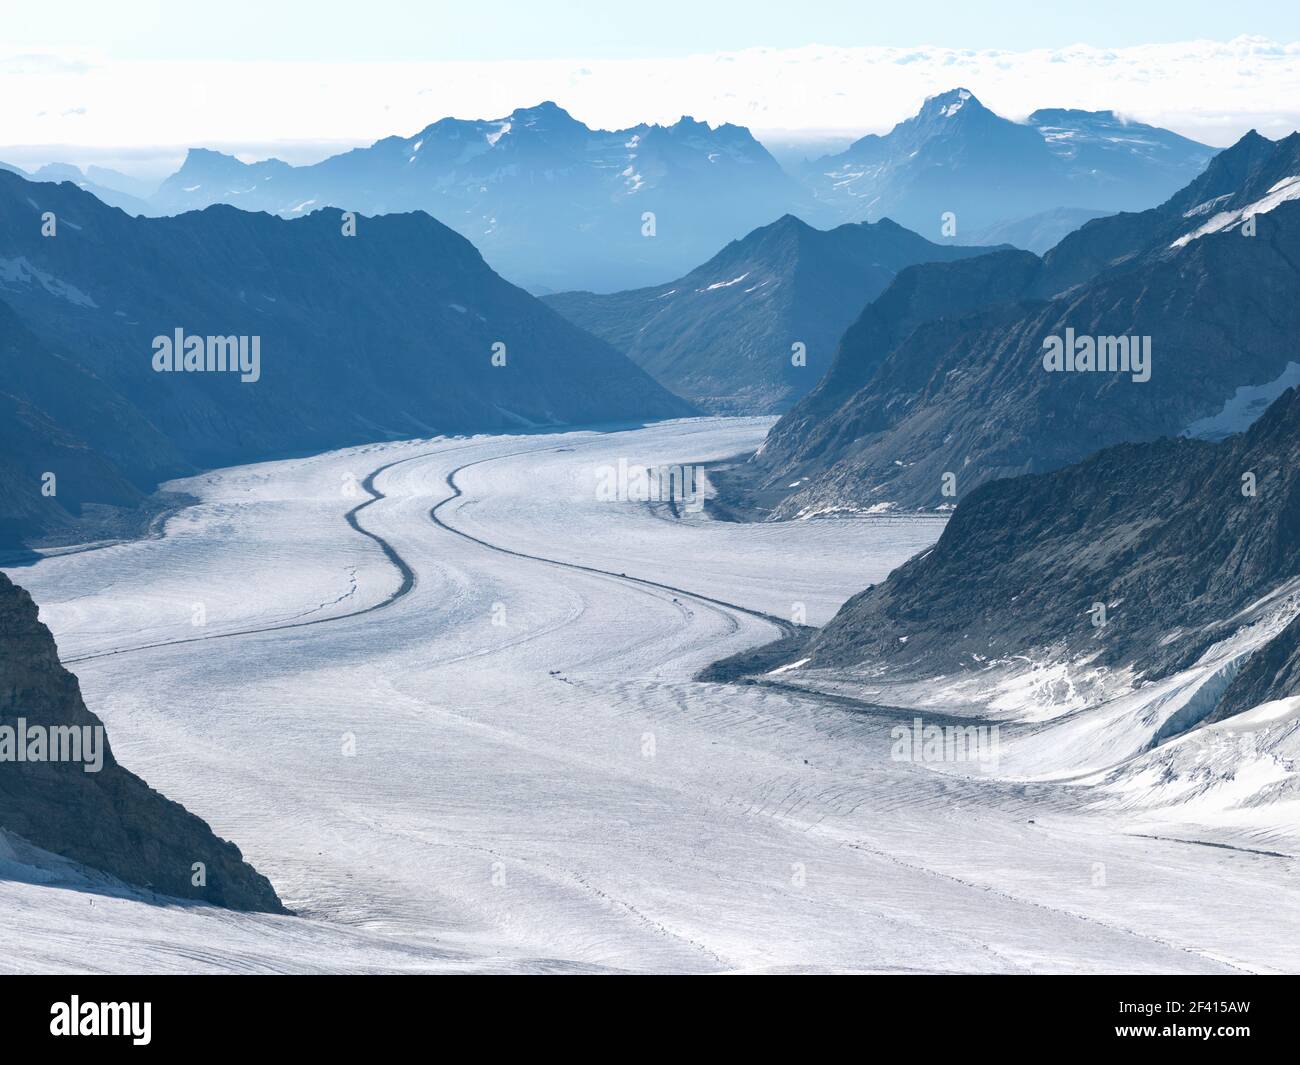 Der große Aletschgletscher, mit 22 km der längste Eisbach der Alpen, beginnt am Jungfraujoch-Gipfel Europas. Stockfoto